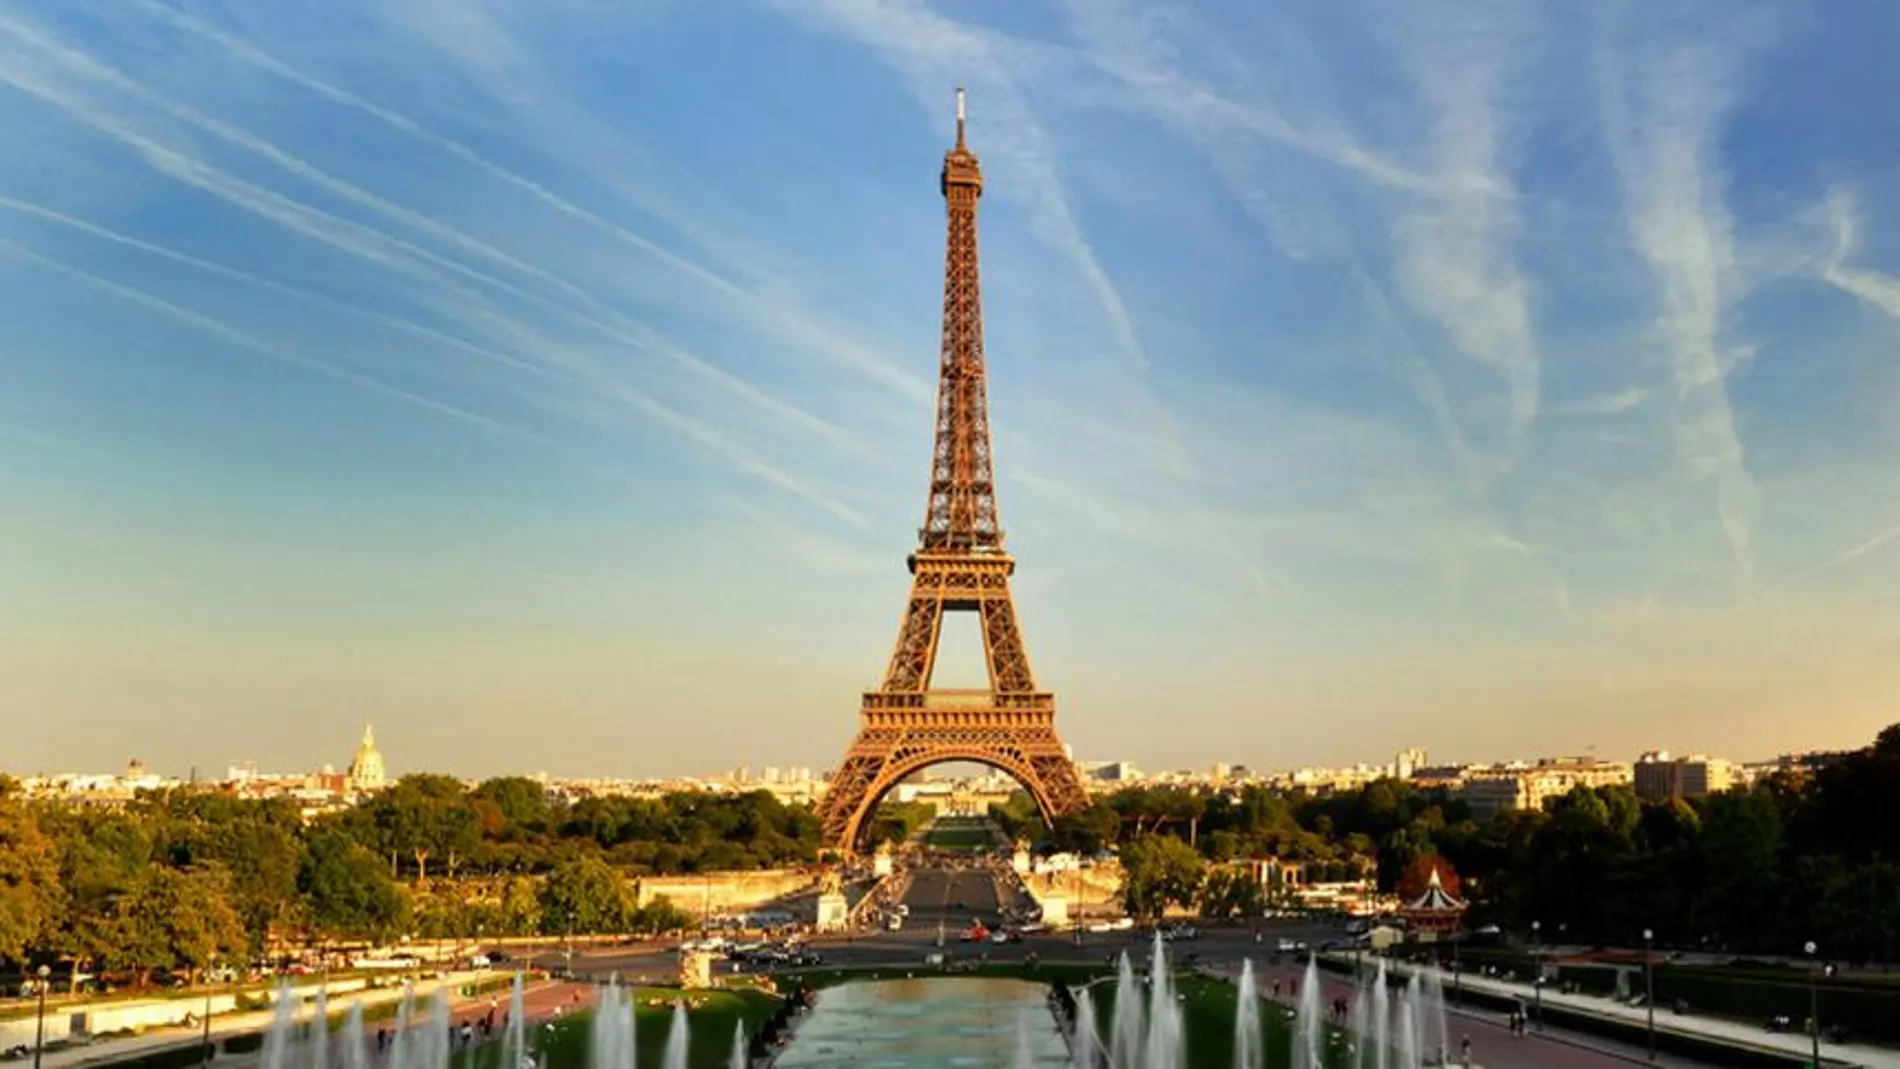 París es el destino europeo con mayor bajada de precio en septiembre con un descenso del 33% respecto a julio y agosto